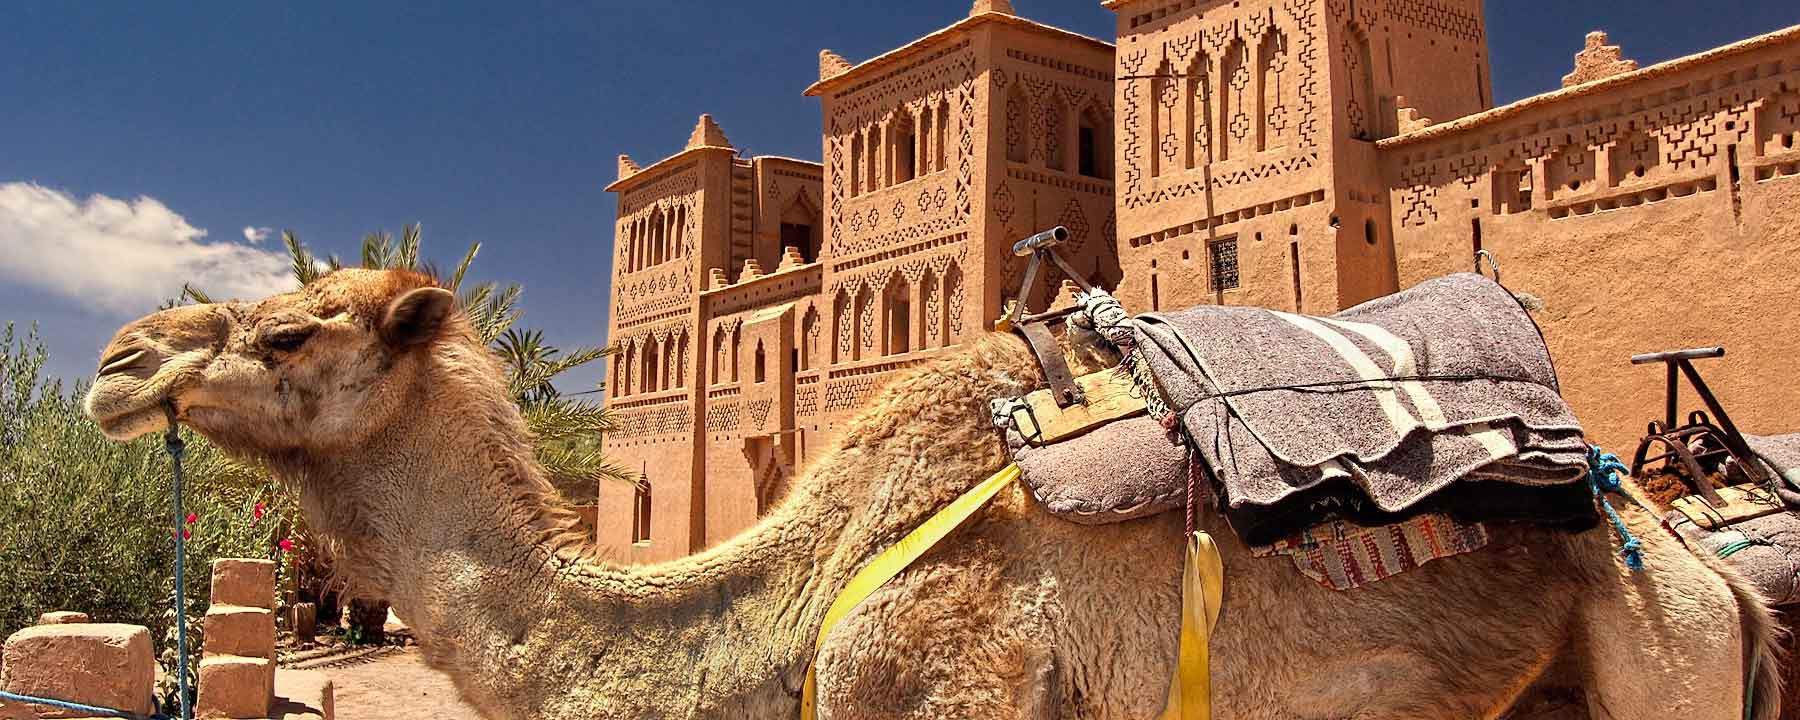 Morocco Ouarzazate Camel Sahara Desert